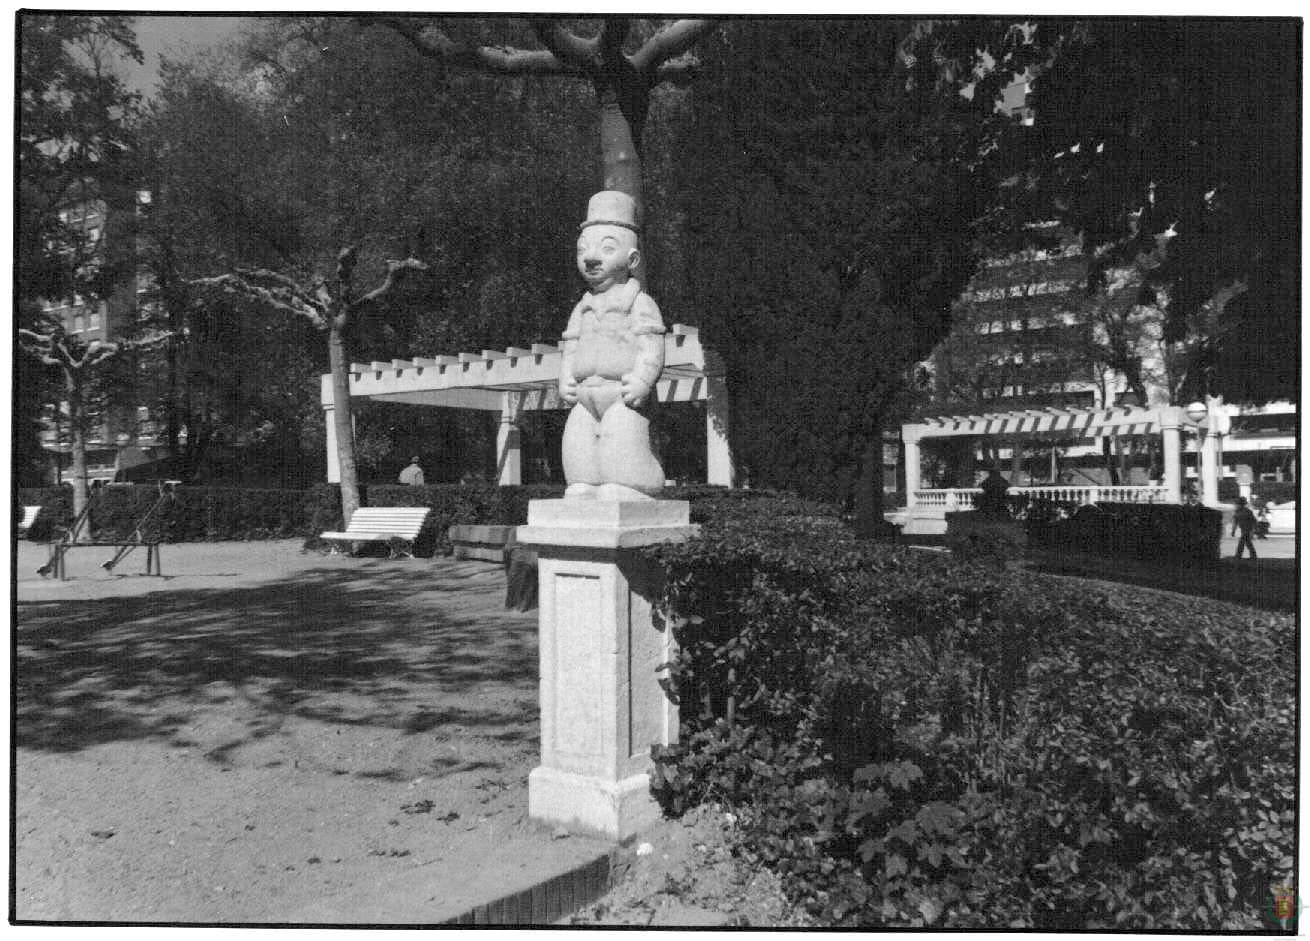 Una de las esculturas que adornaba el parque del Poniente en los años sesenta.